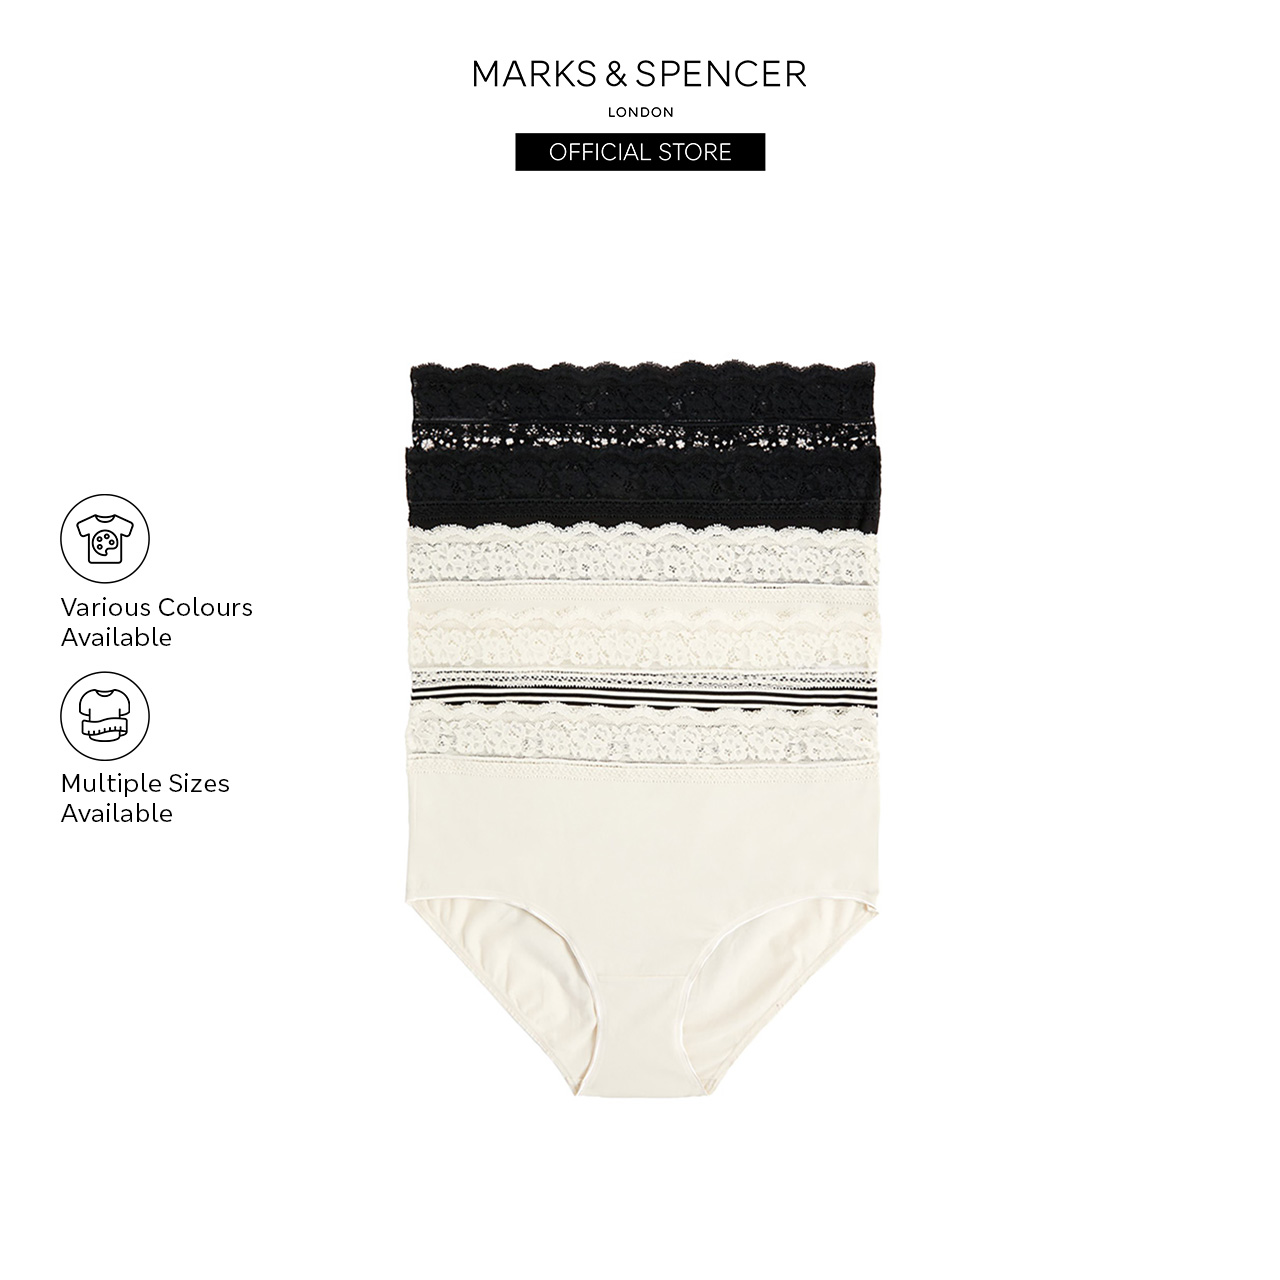 Buy Marks & Spencer Panties Online